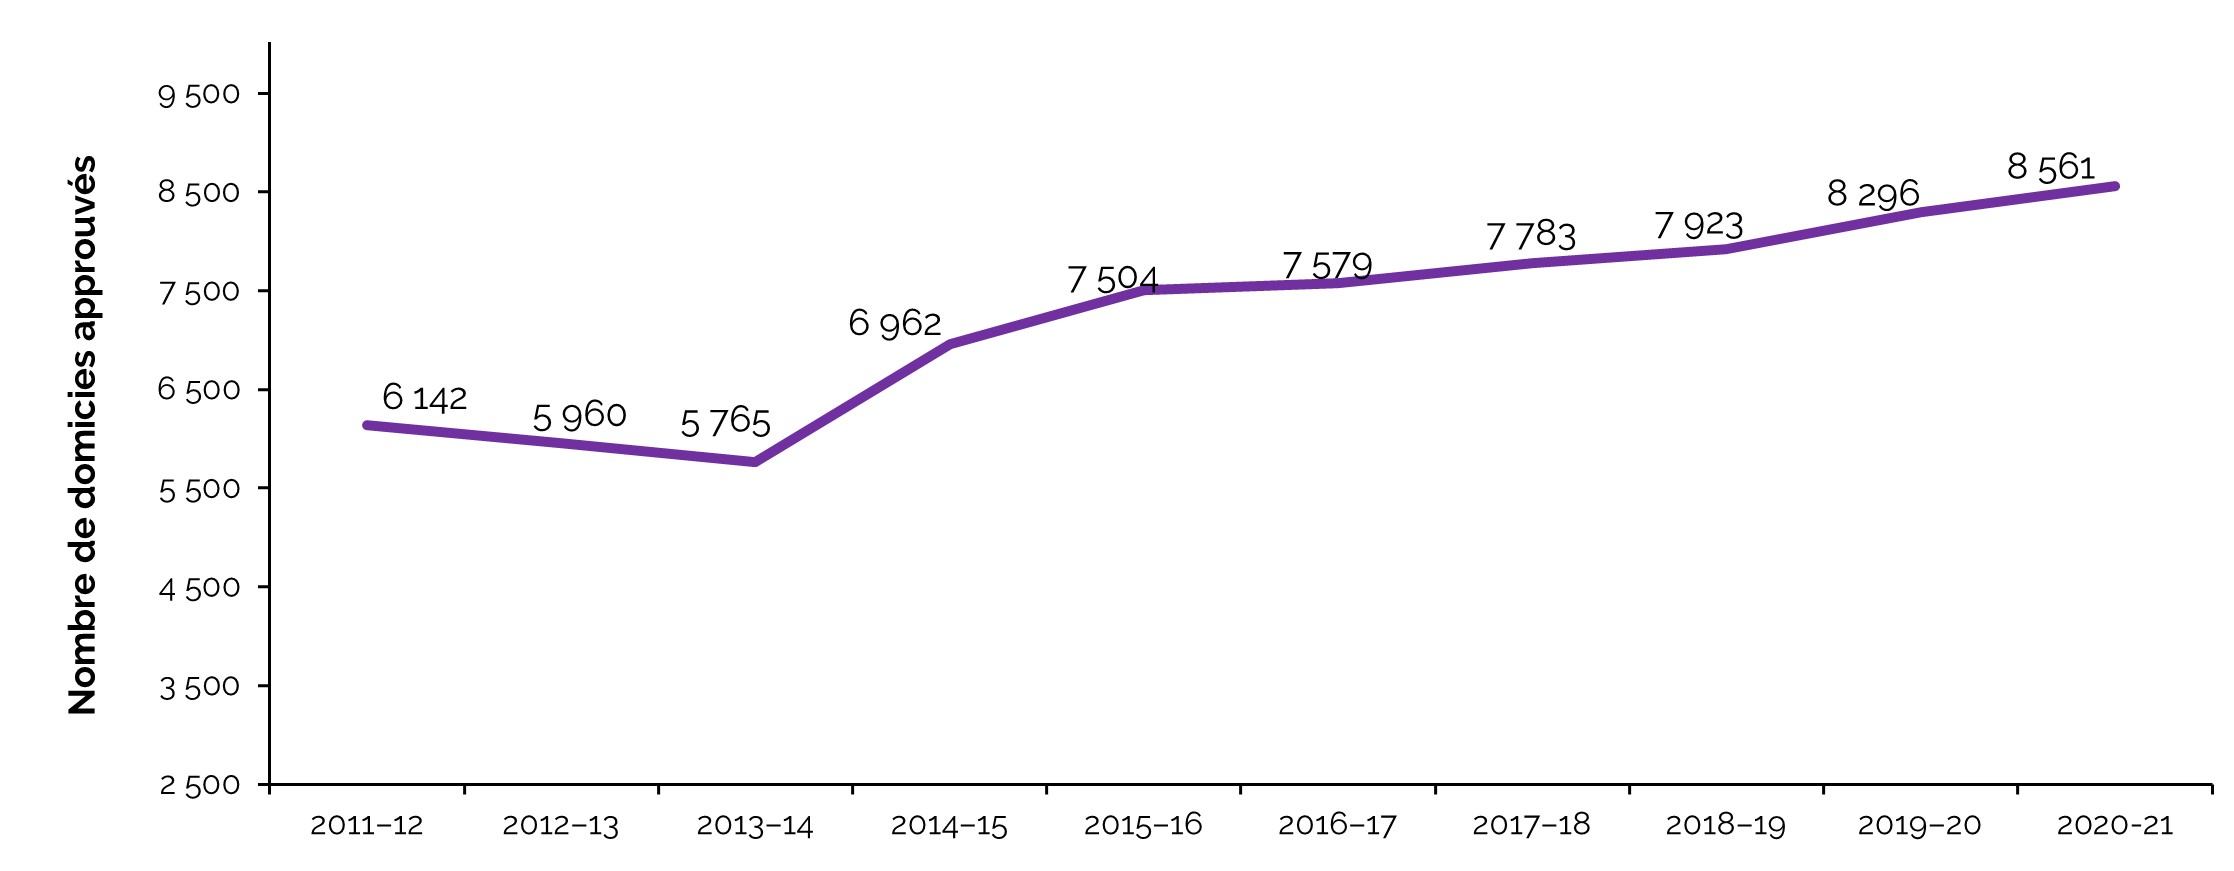 Agences de services de garde en milieu familial agréées et domiciles approuvés, de 2011-2012 a 2020-2021